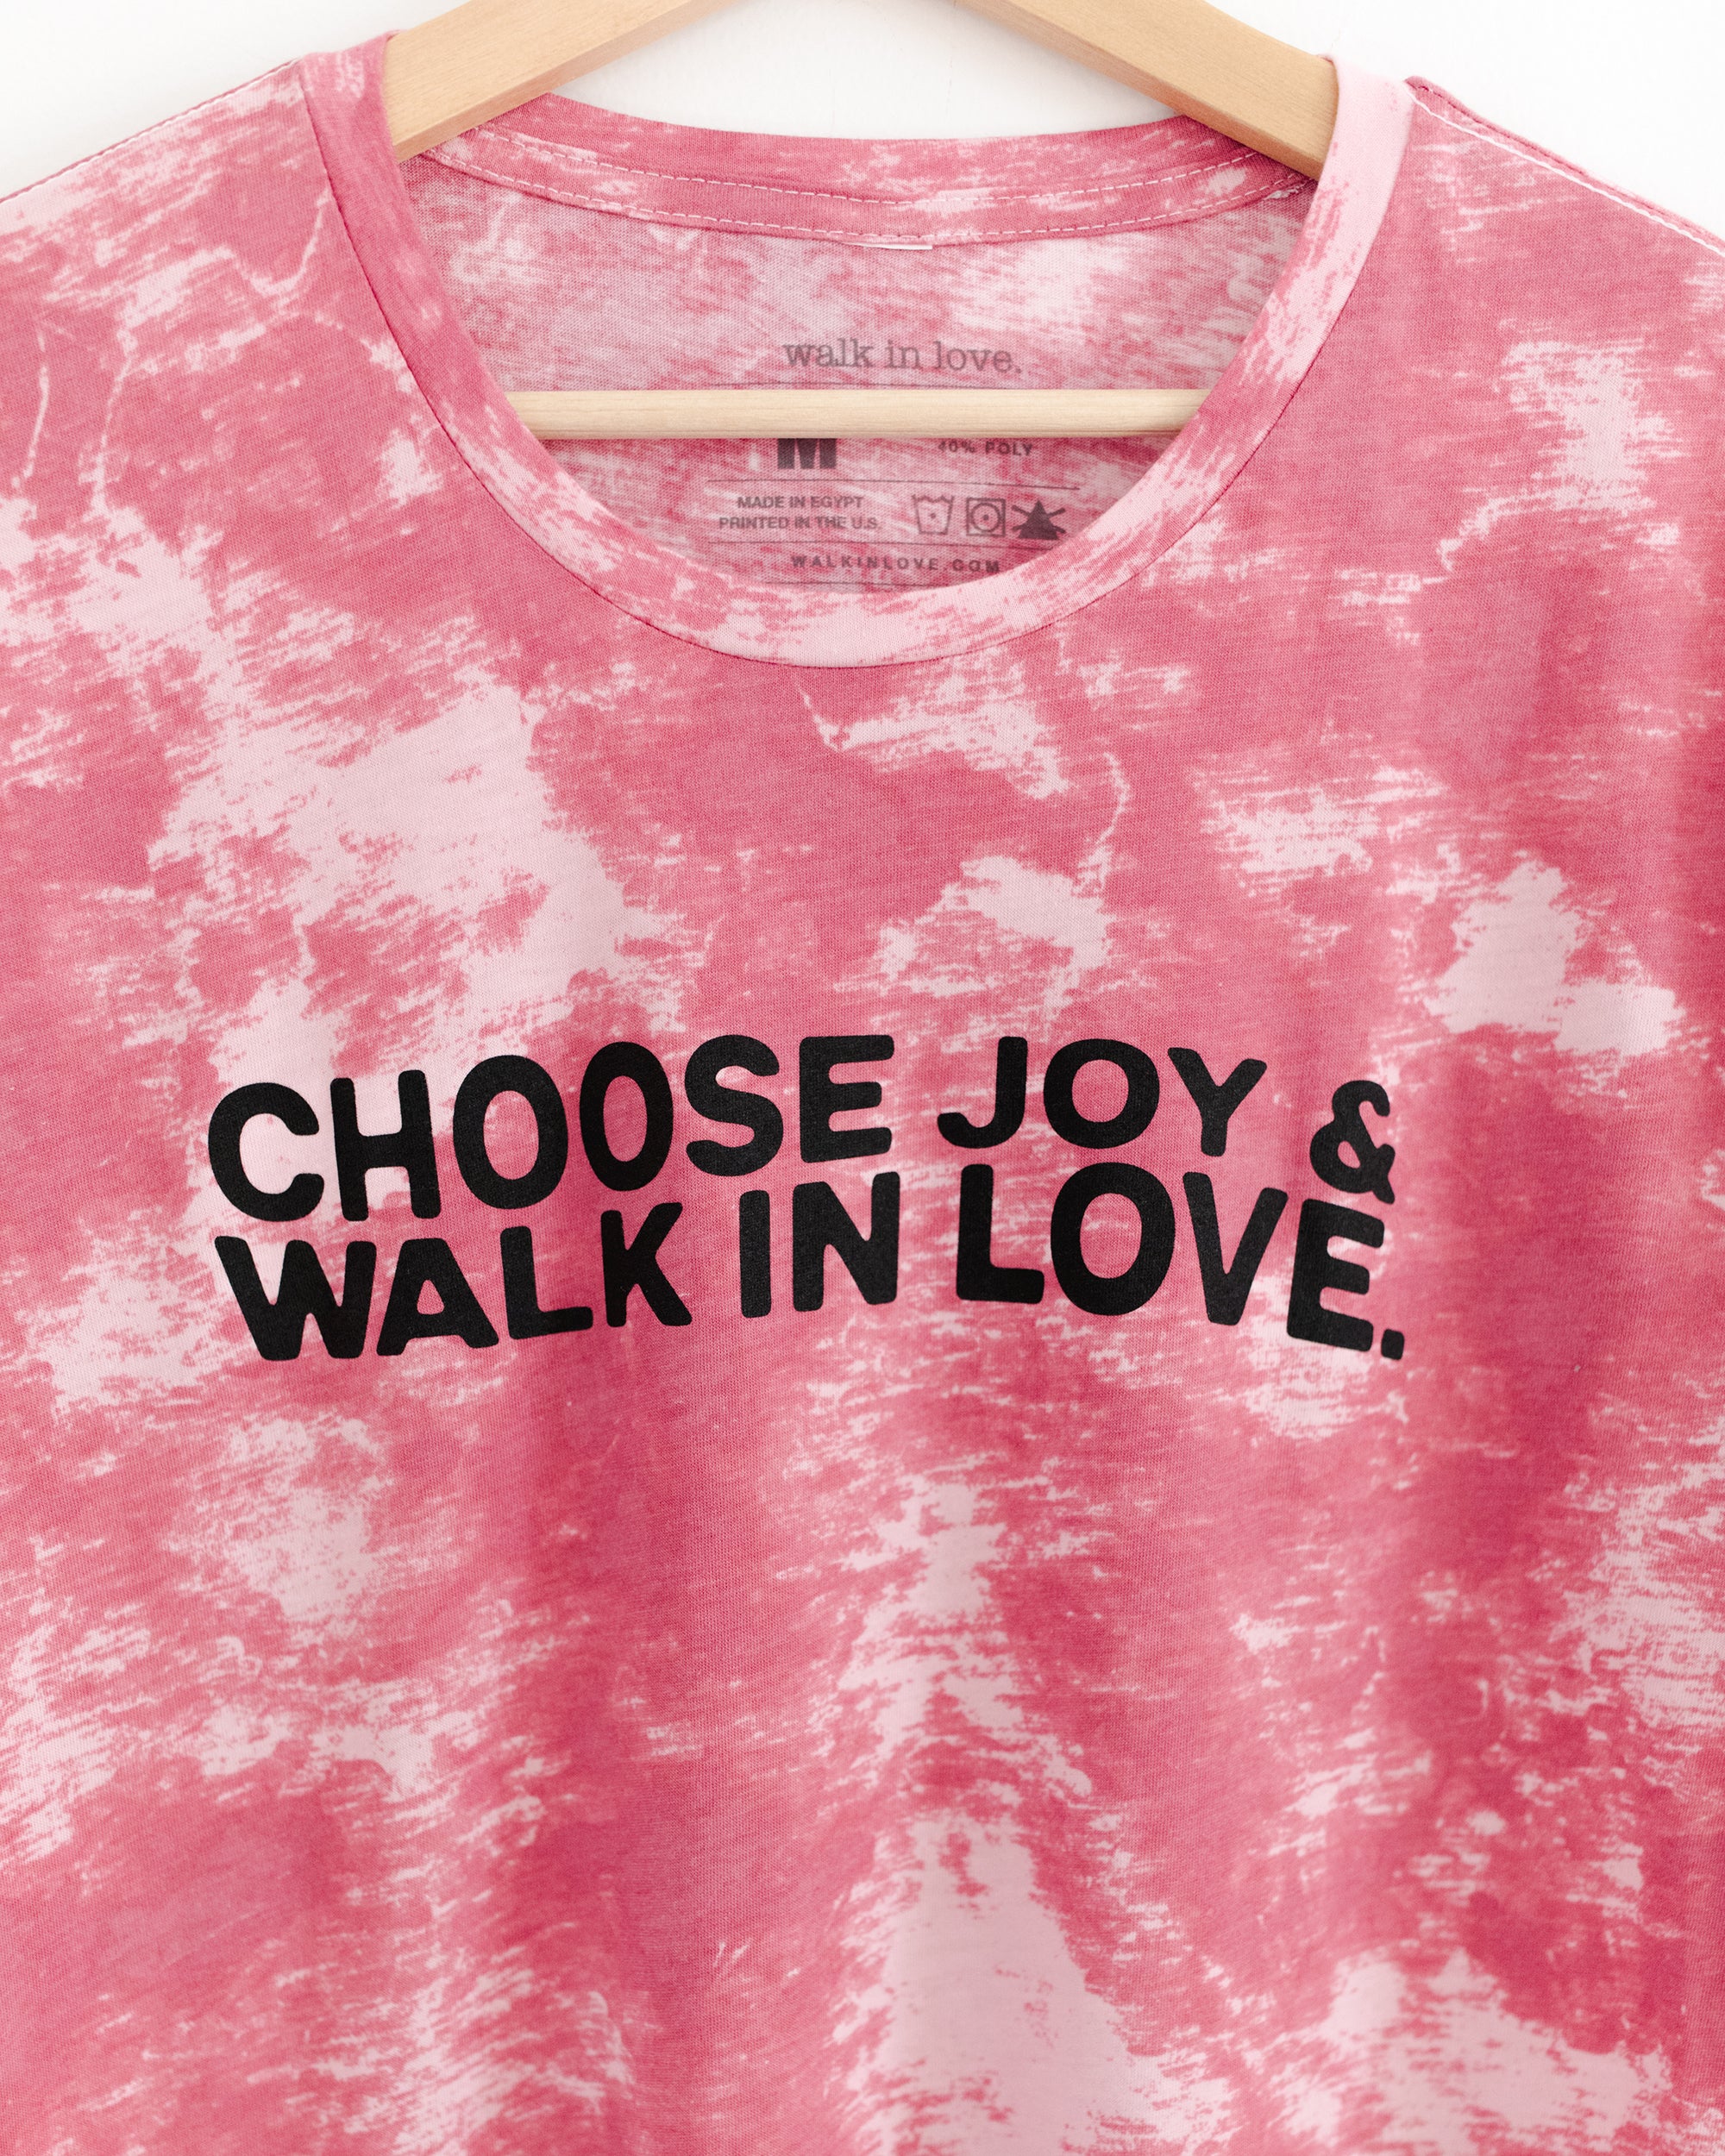 Choose Joy & walk in love. Pink Tie Dye Tee